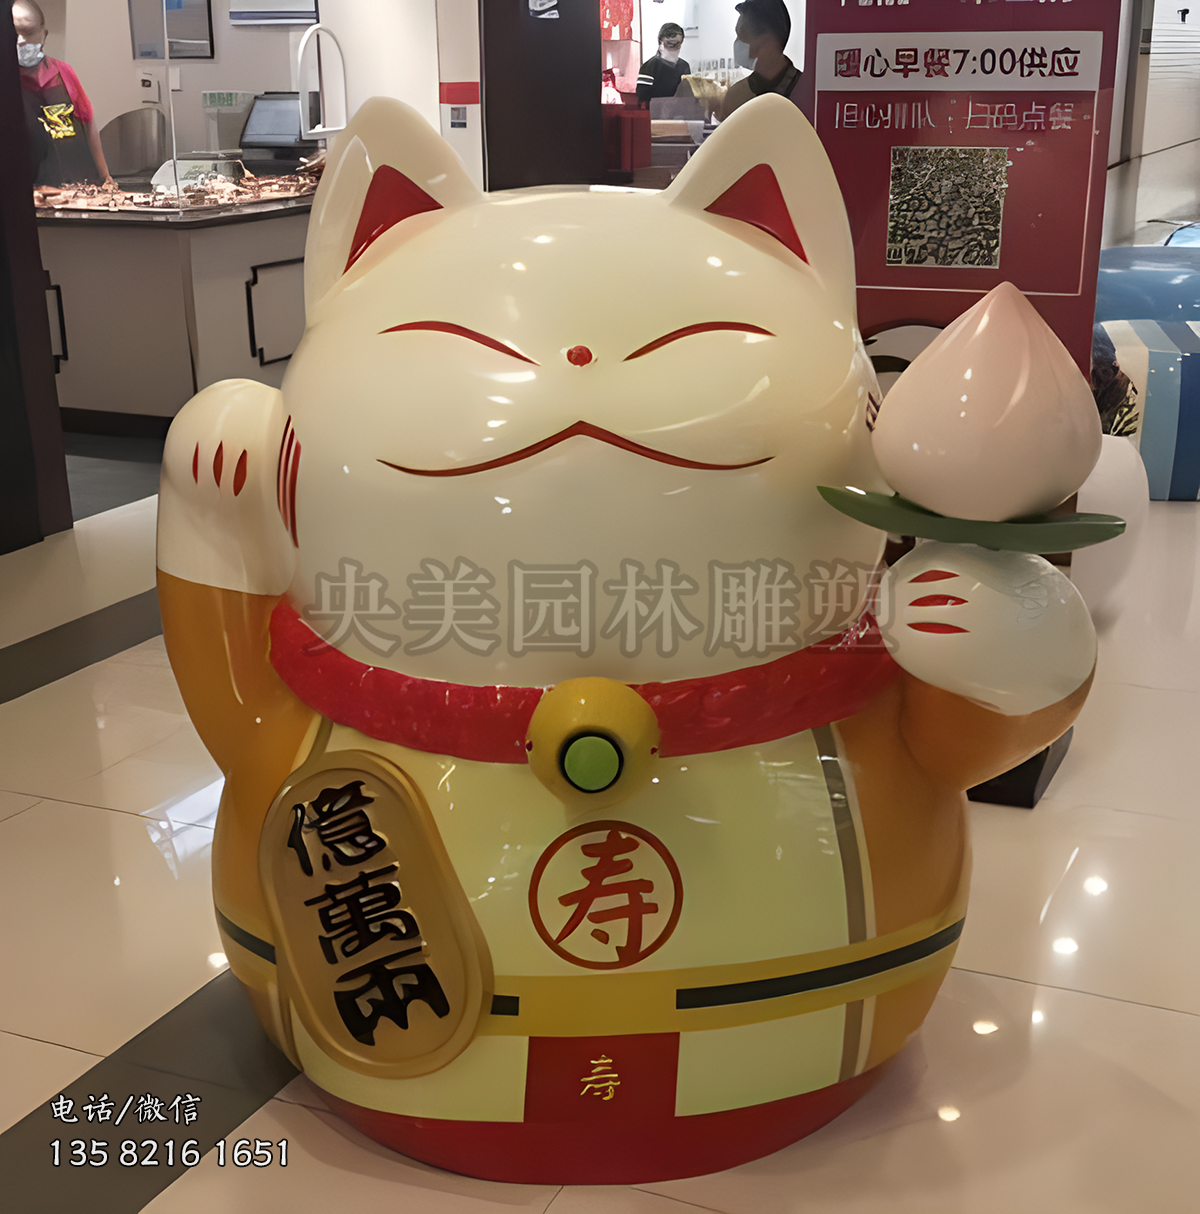 亿万两招财猫卡通雕塑